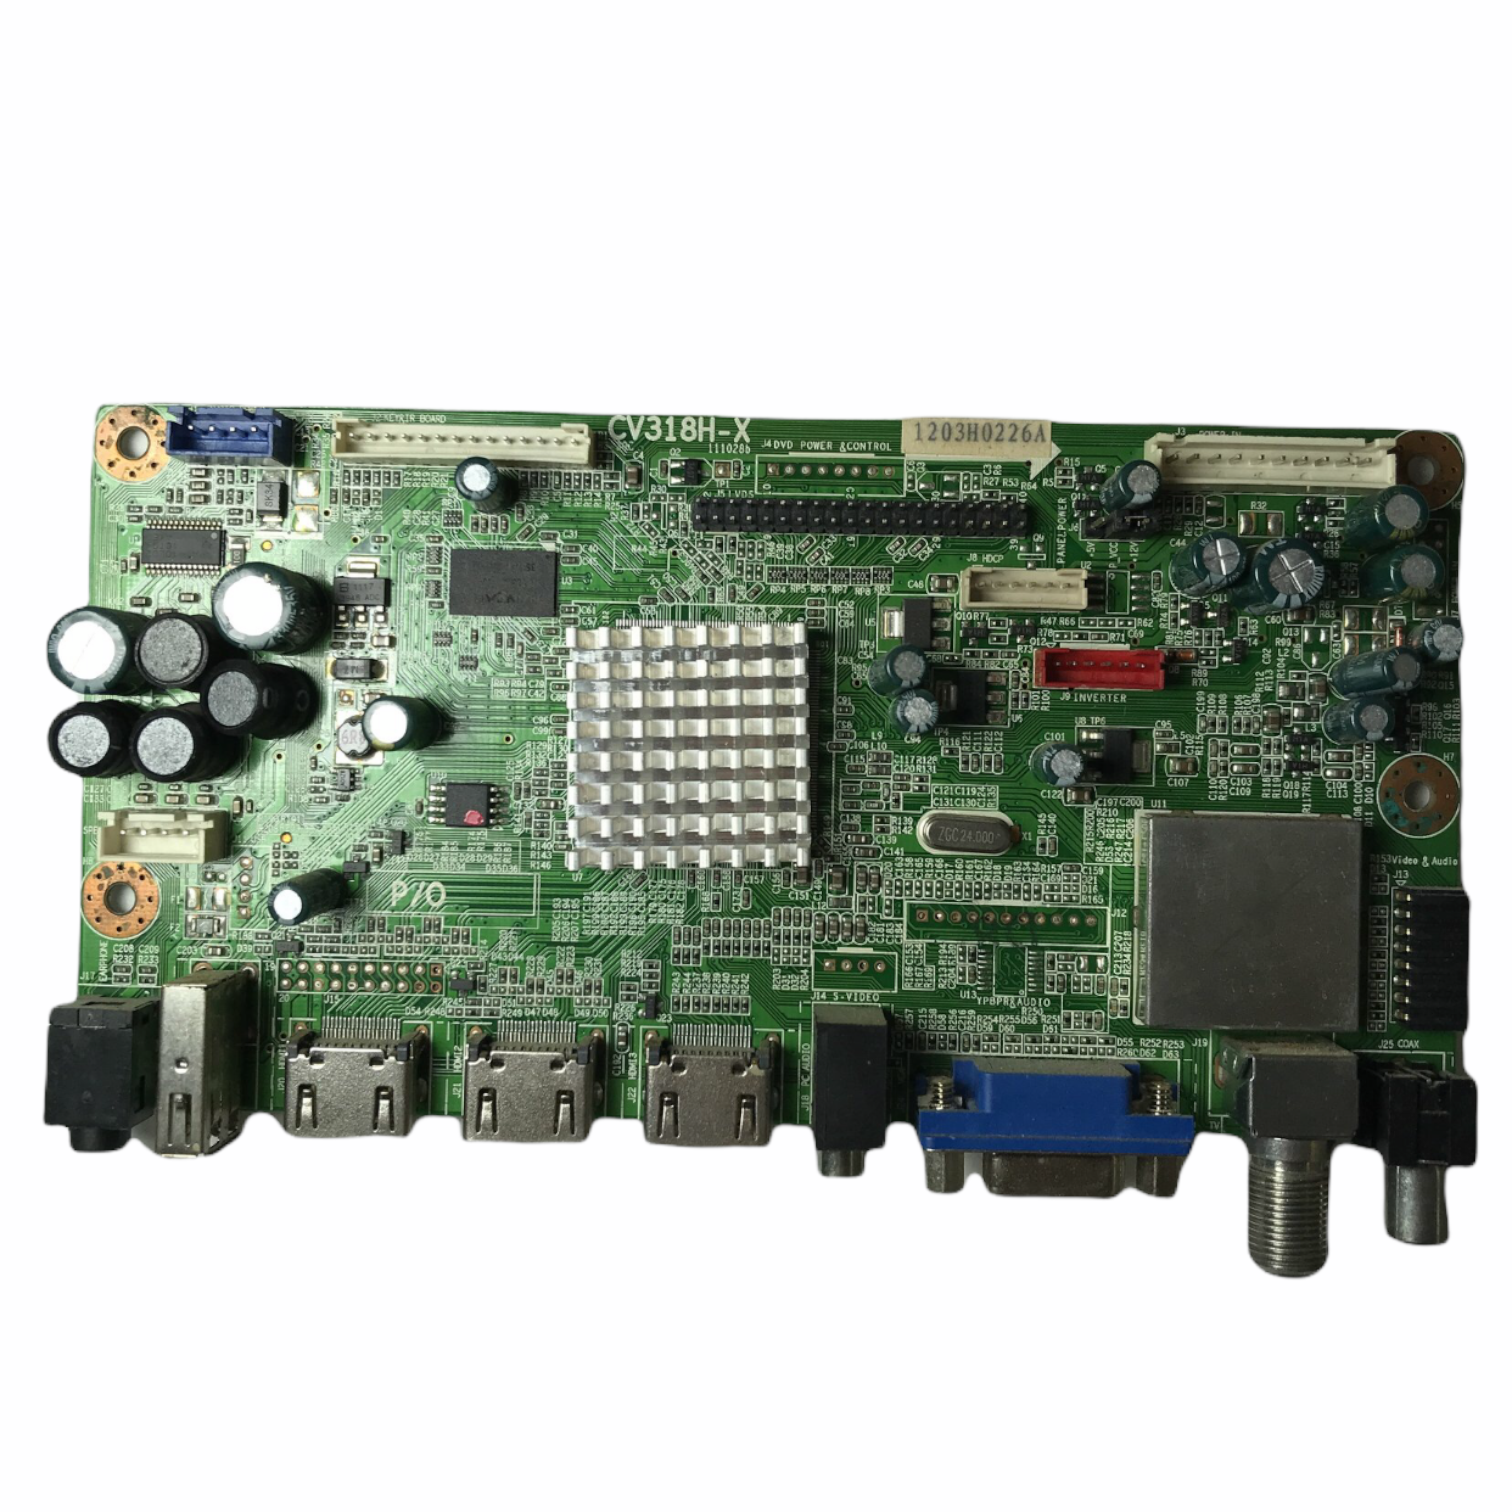 Apex 1203H0226A (CV318H-X) Main Board for LD3288T